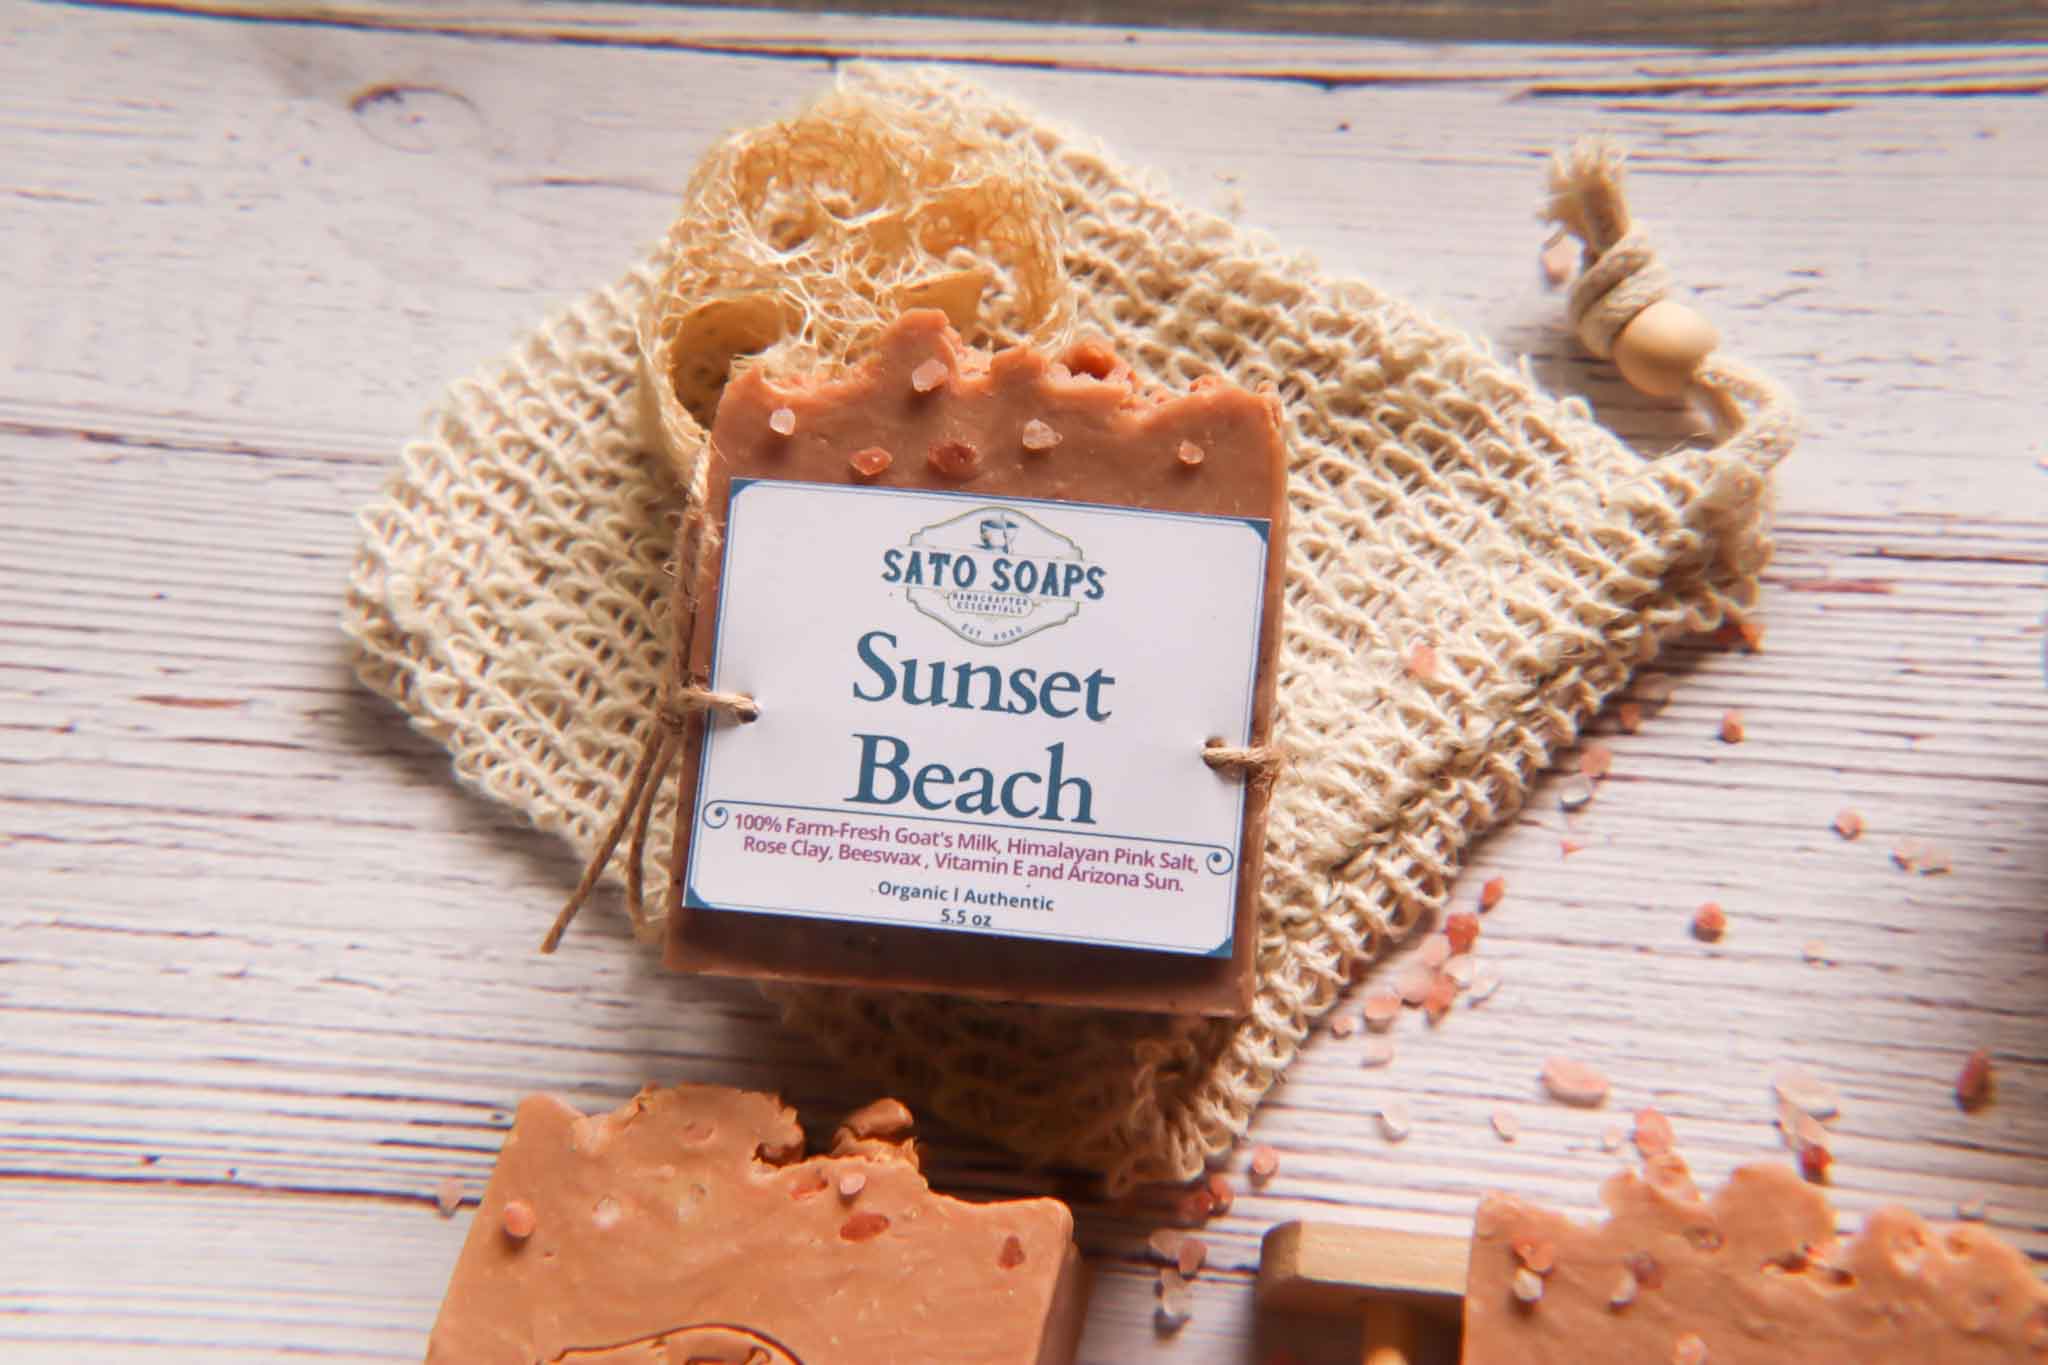 Sunset Beach (Himalayan Pink Salt, Rose Clay, Shea Butter, Vitamin E and Arizona Sun)